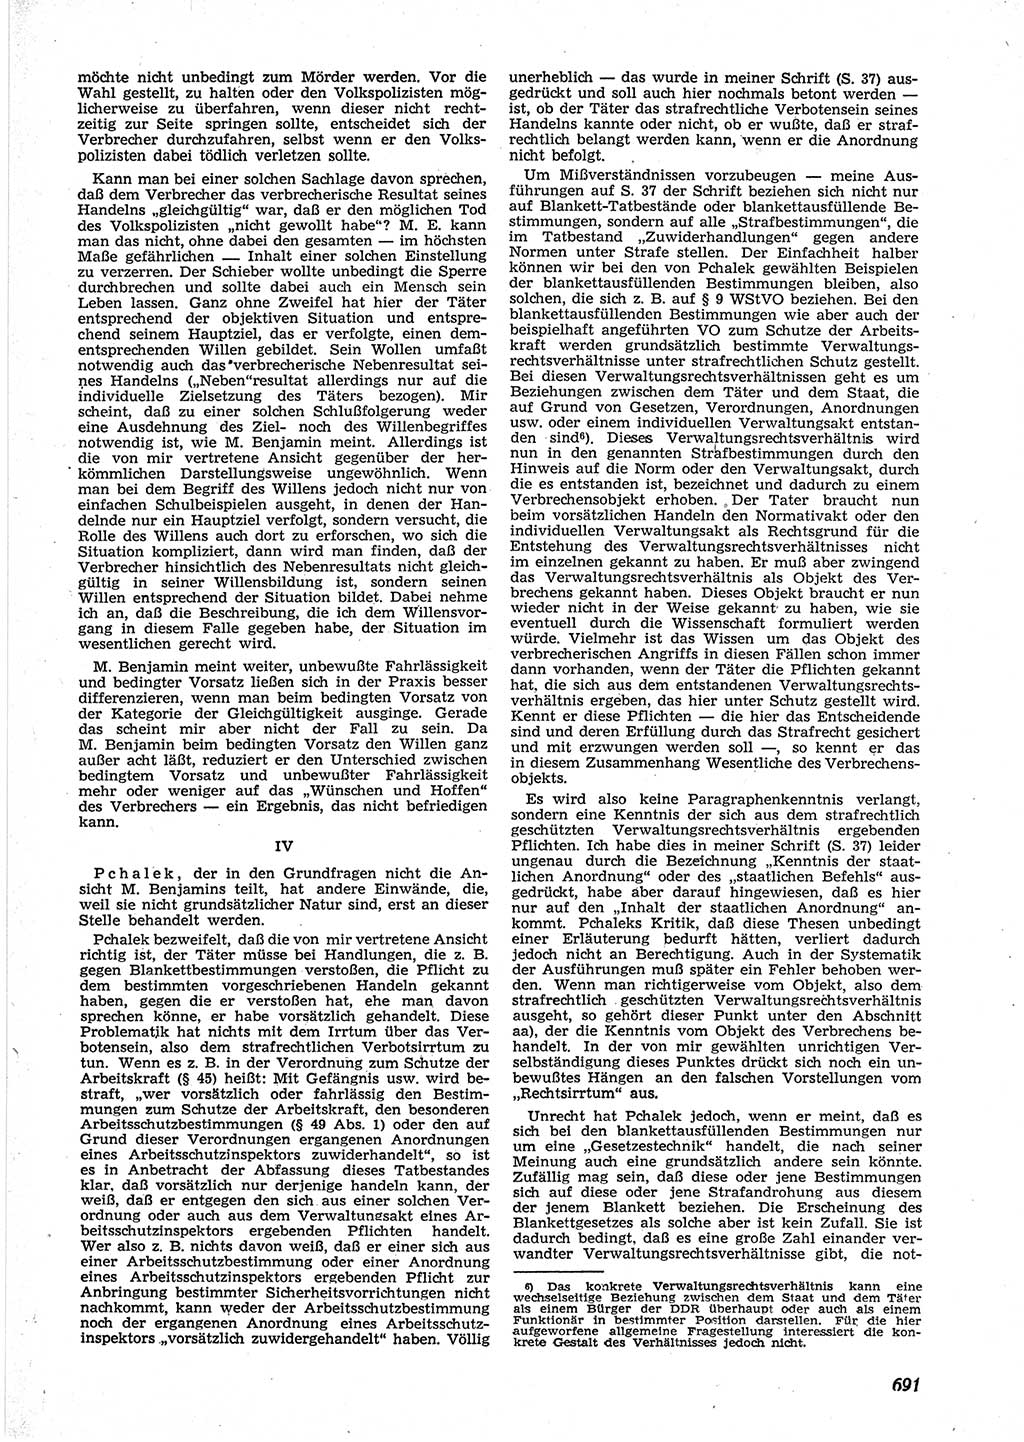 Neue Justiz (NJ), Zeitschrift für Recht und Rechtswissenschaft [Deutsche Demokratische Republik (DDR)], 9. Jahrgang 1955, Seite 691 (NJ DDR 1955, S. 691)